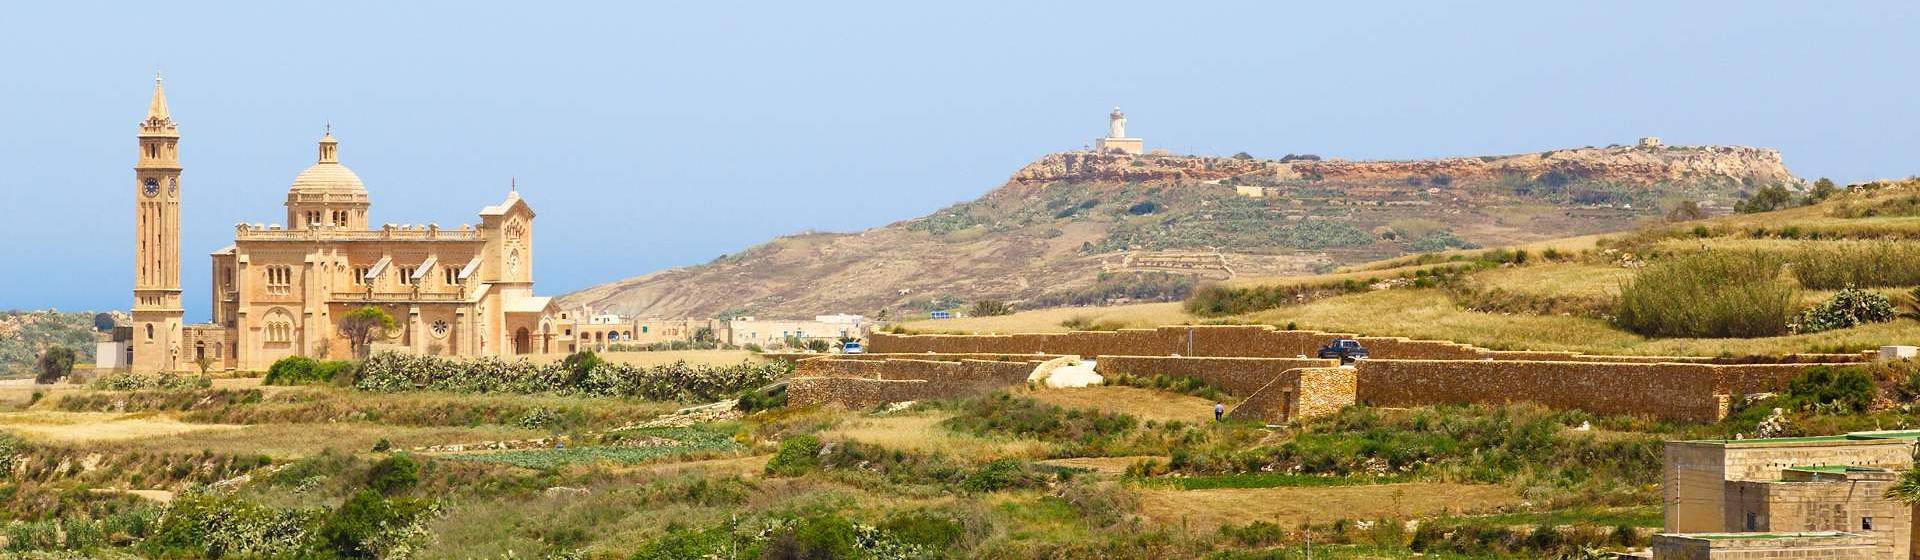 Holidays to Gozo Image